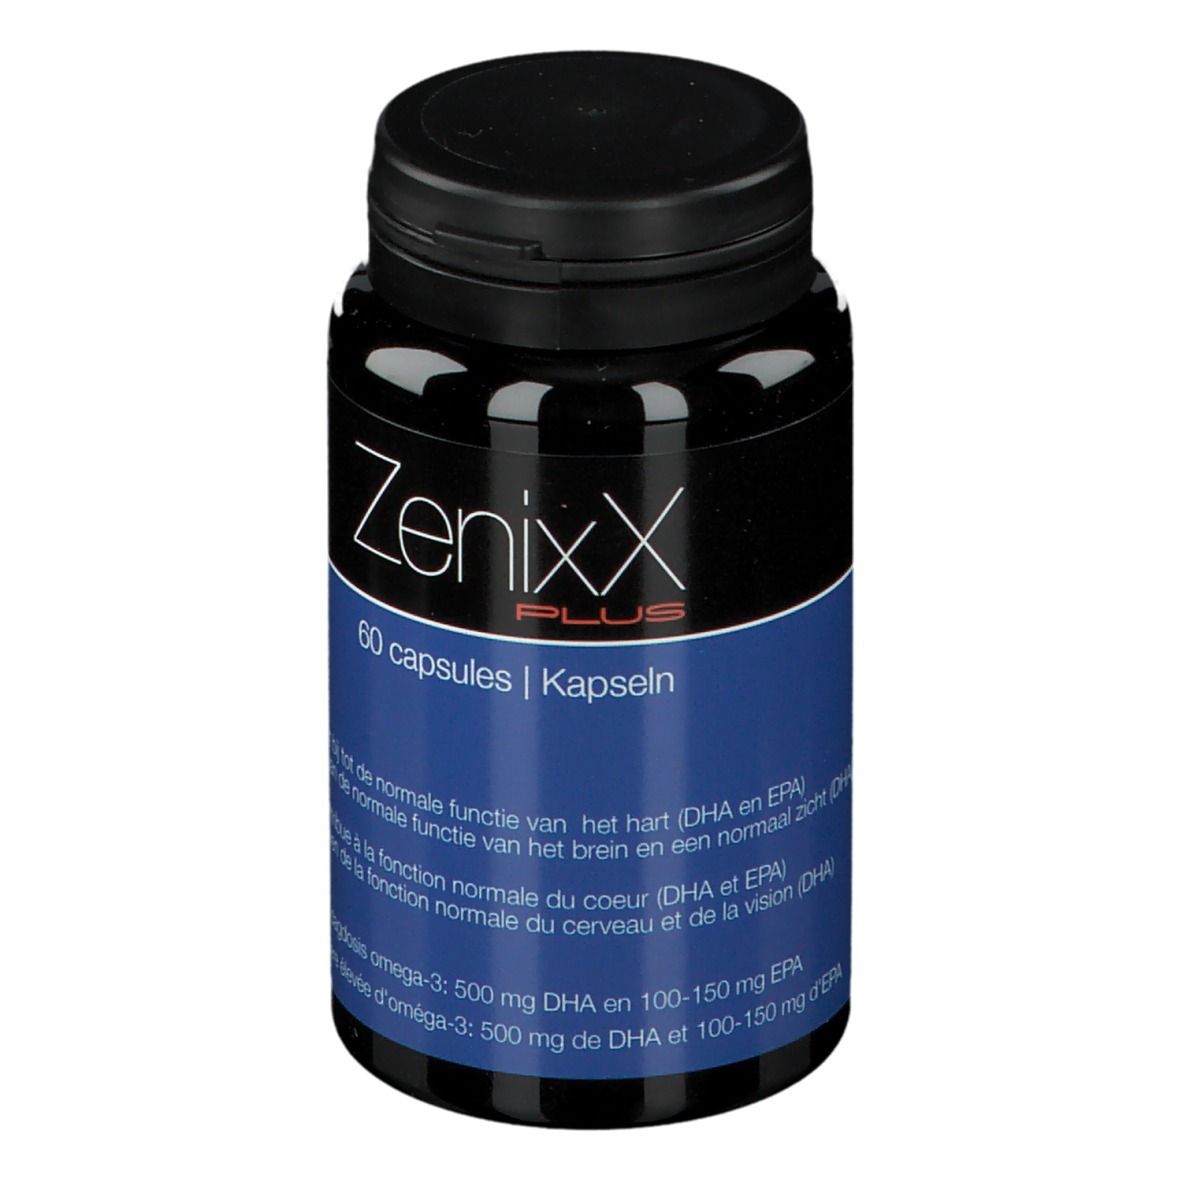 ZenixX Plus